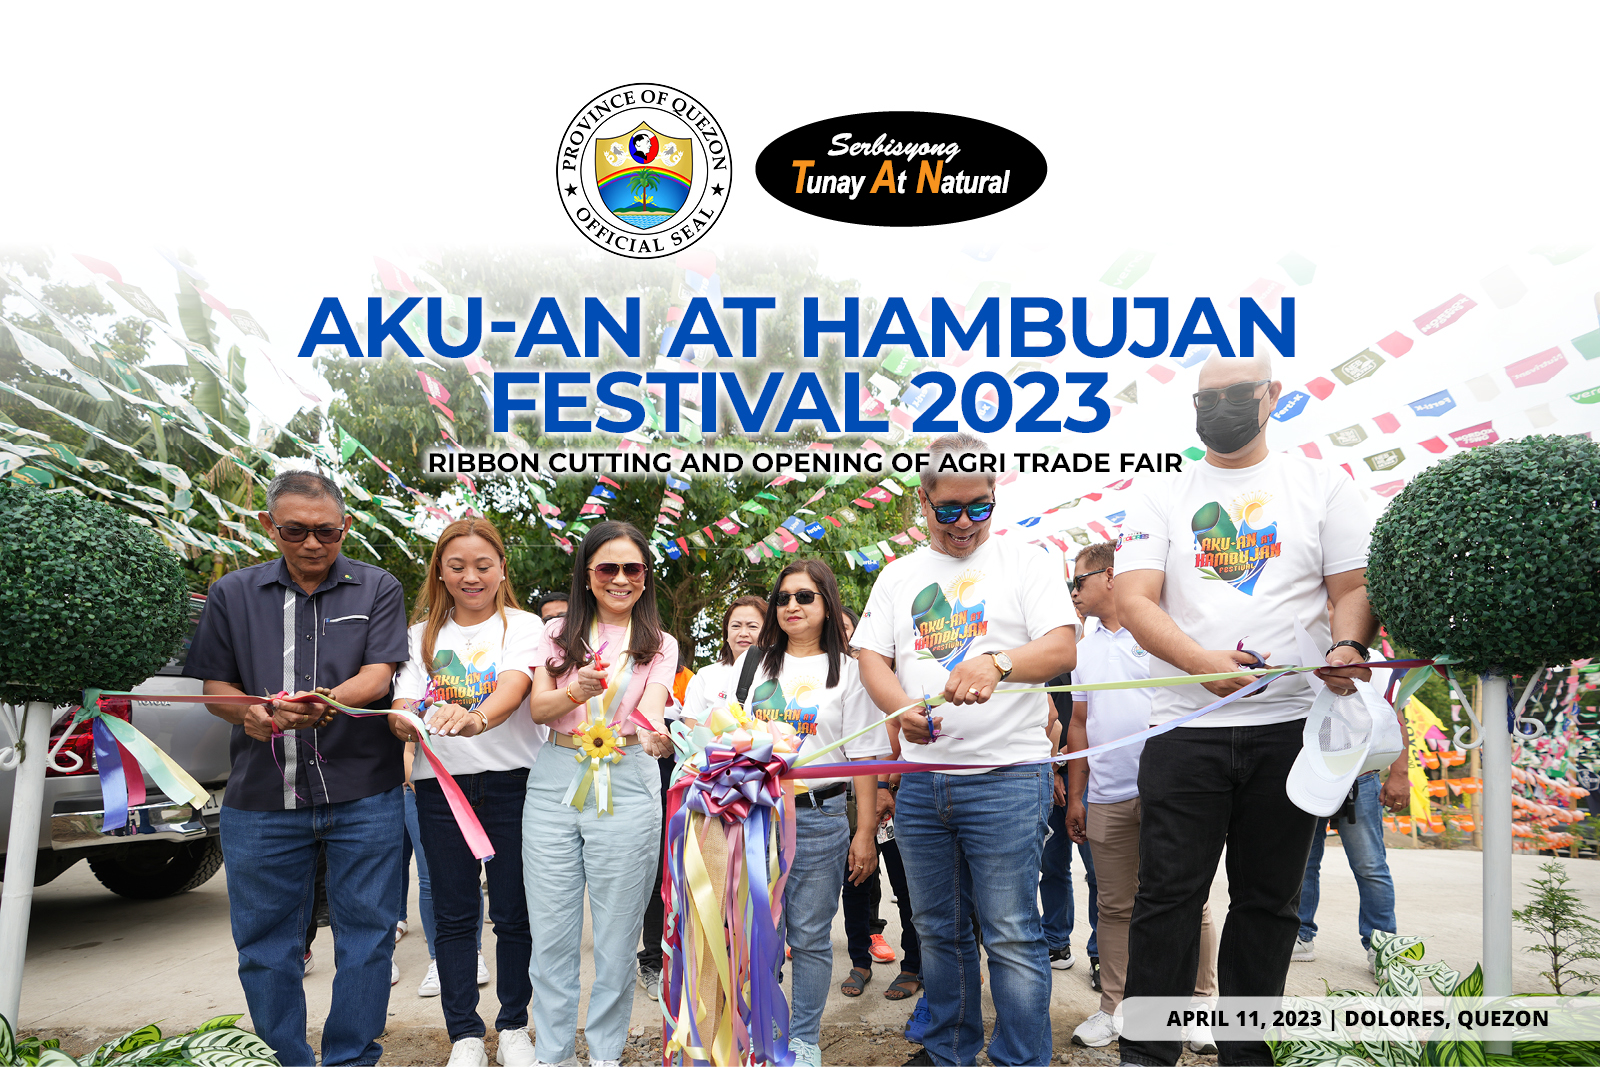 Akun-An at Hambujan Festival 2023 – Ribbon Cutting and Opening of Agri Trade Fair | April 11, 2023